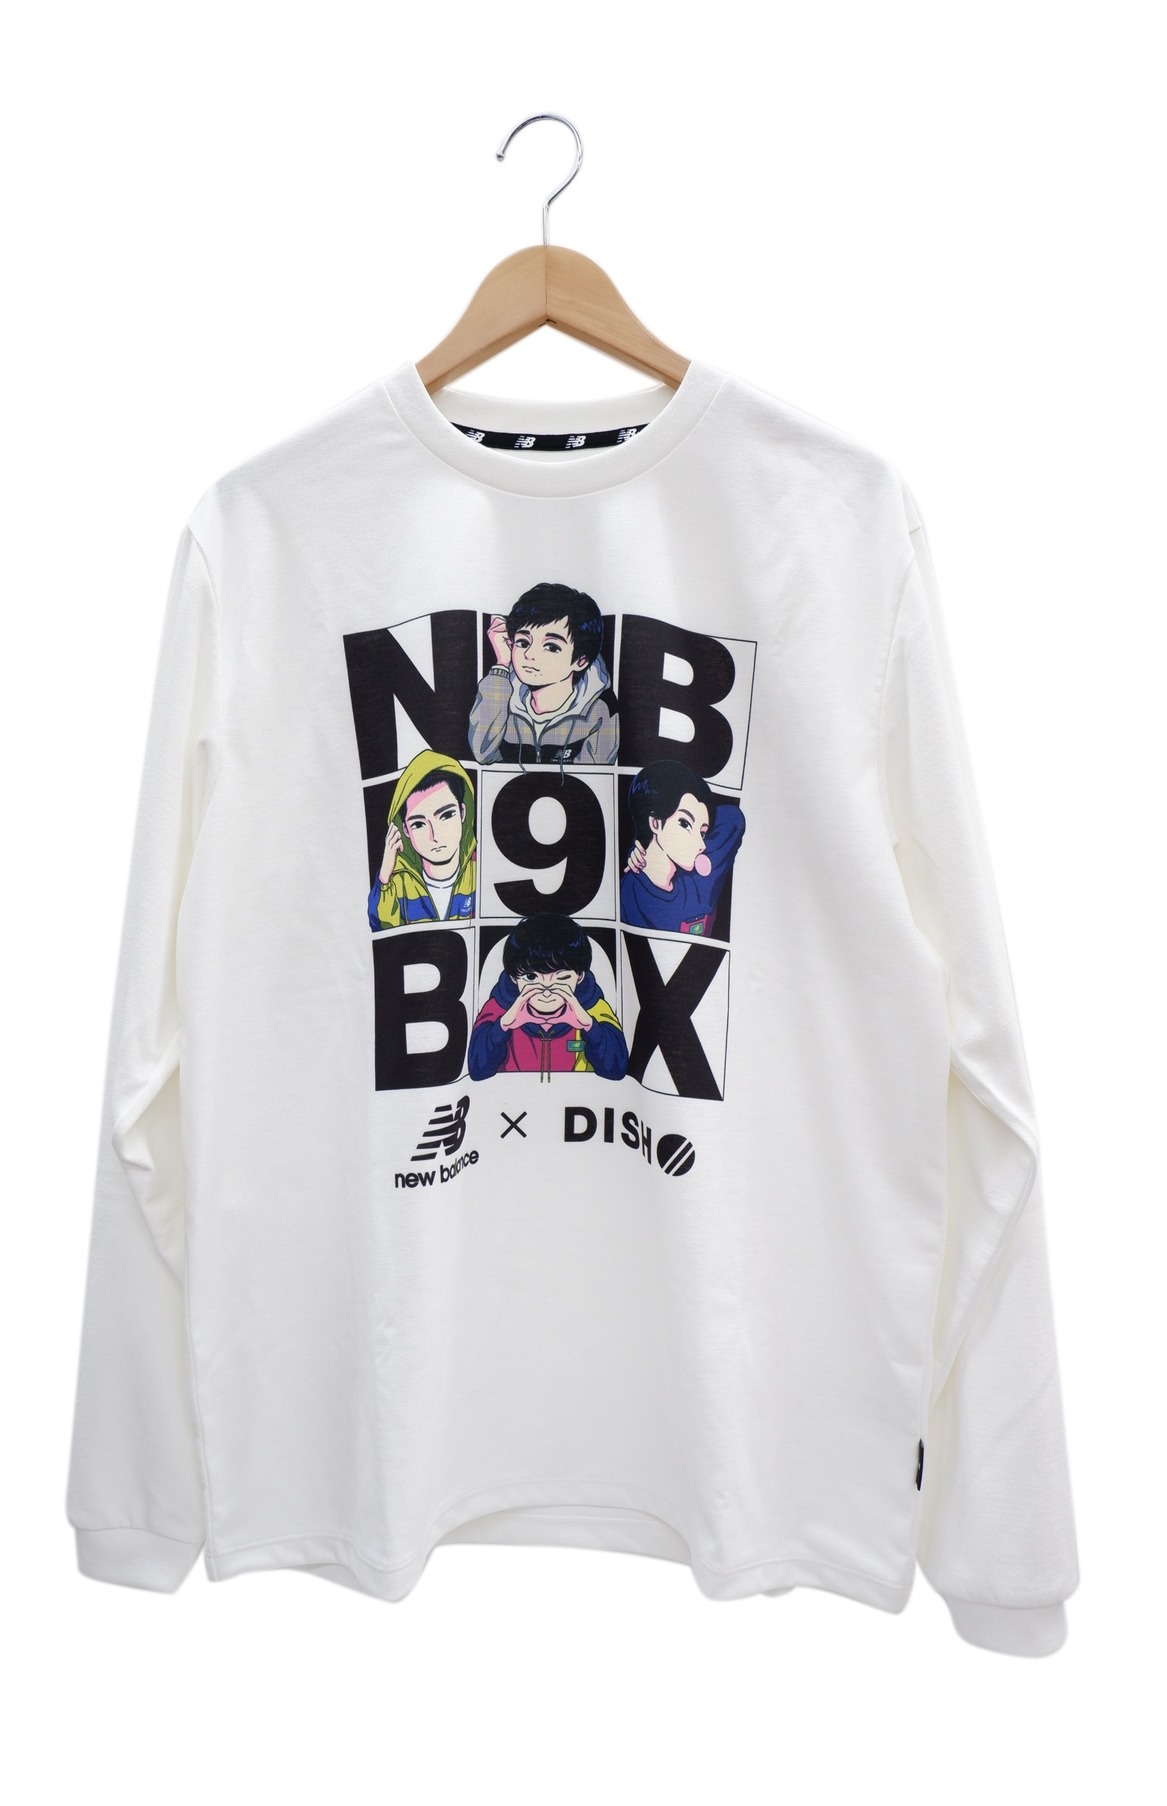 中古・古着通販】NEW BALANCE (ニューバランス) Tシャツ DISH//9BOX